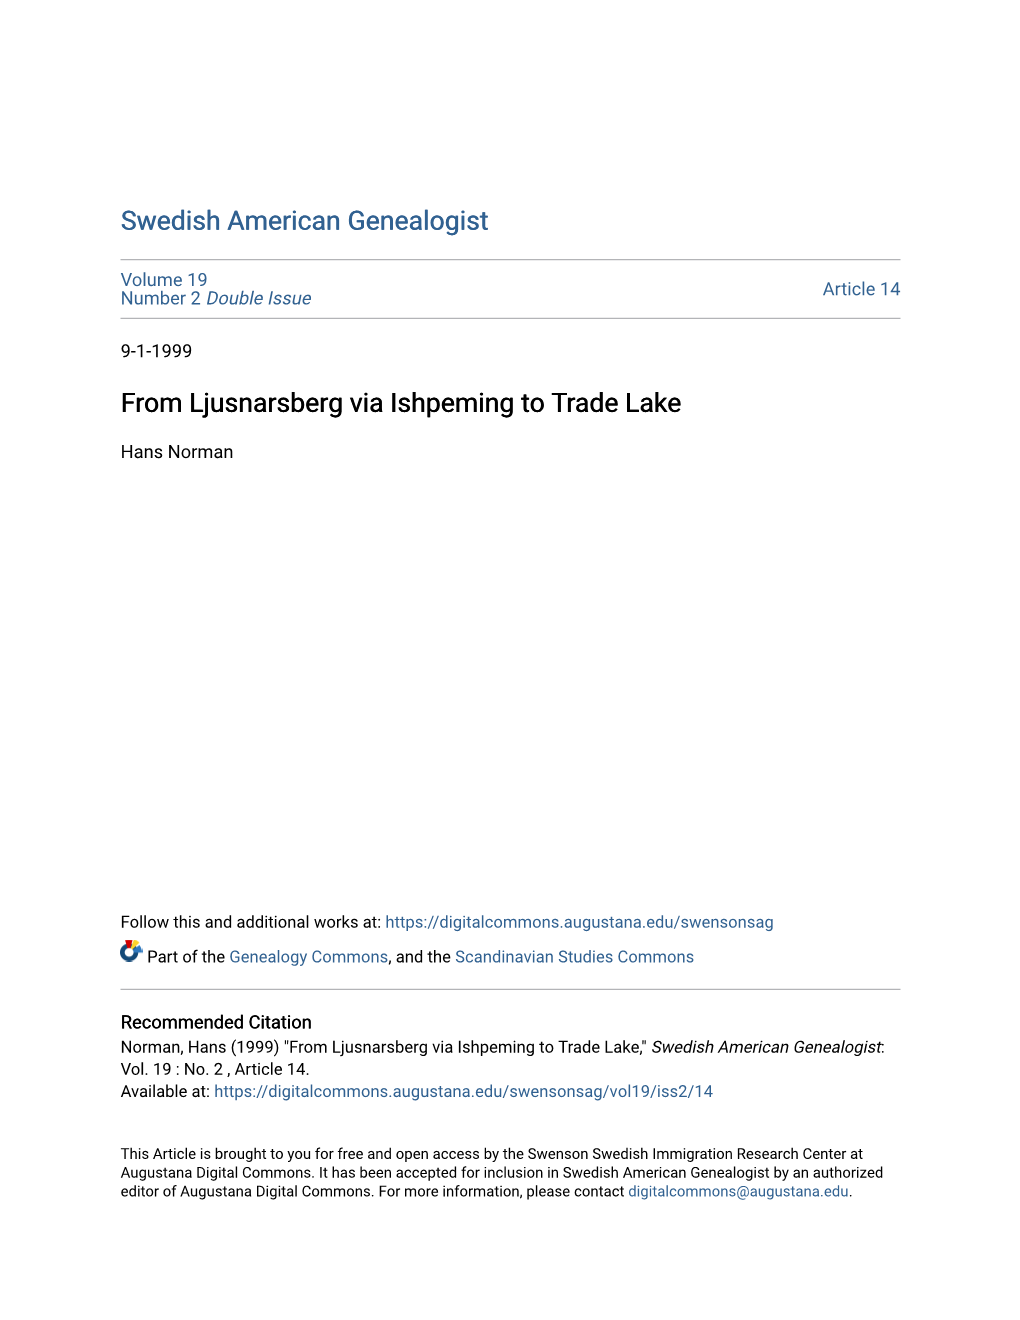 From Ljusnarsberg Via Ishpeming to Trade Lake